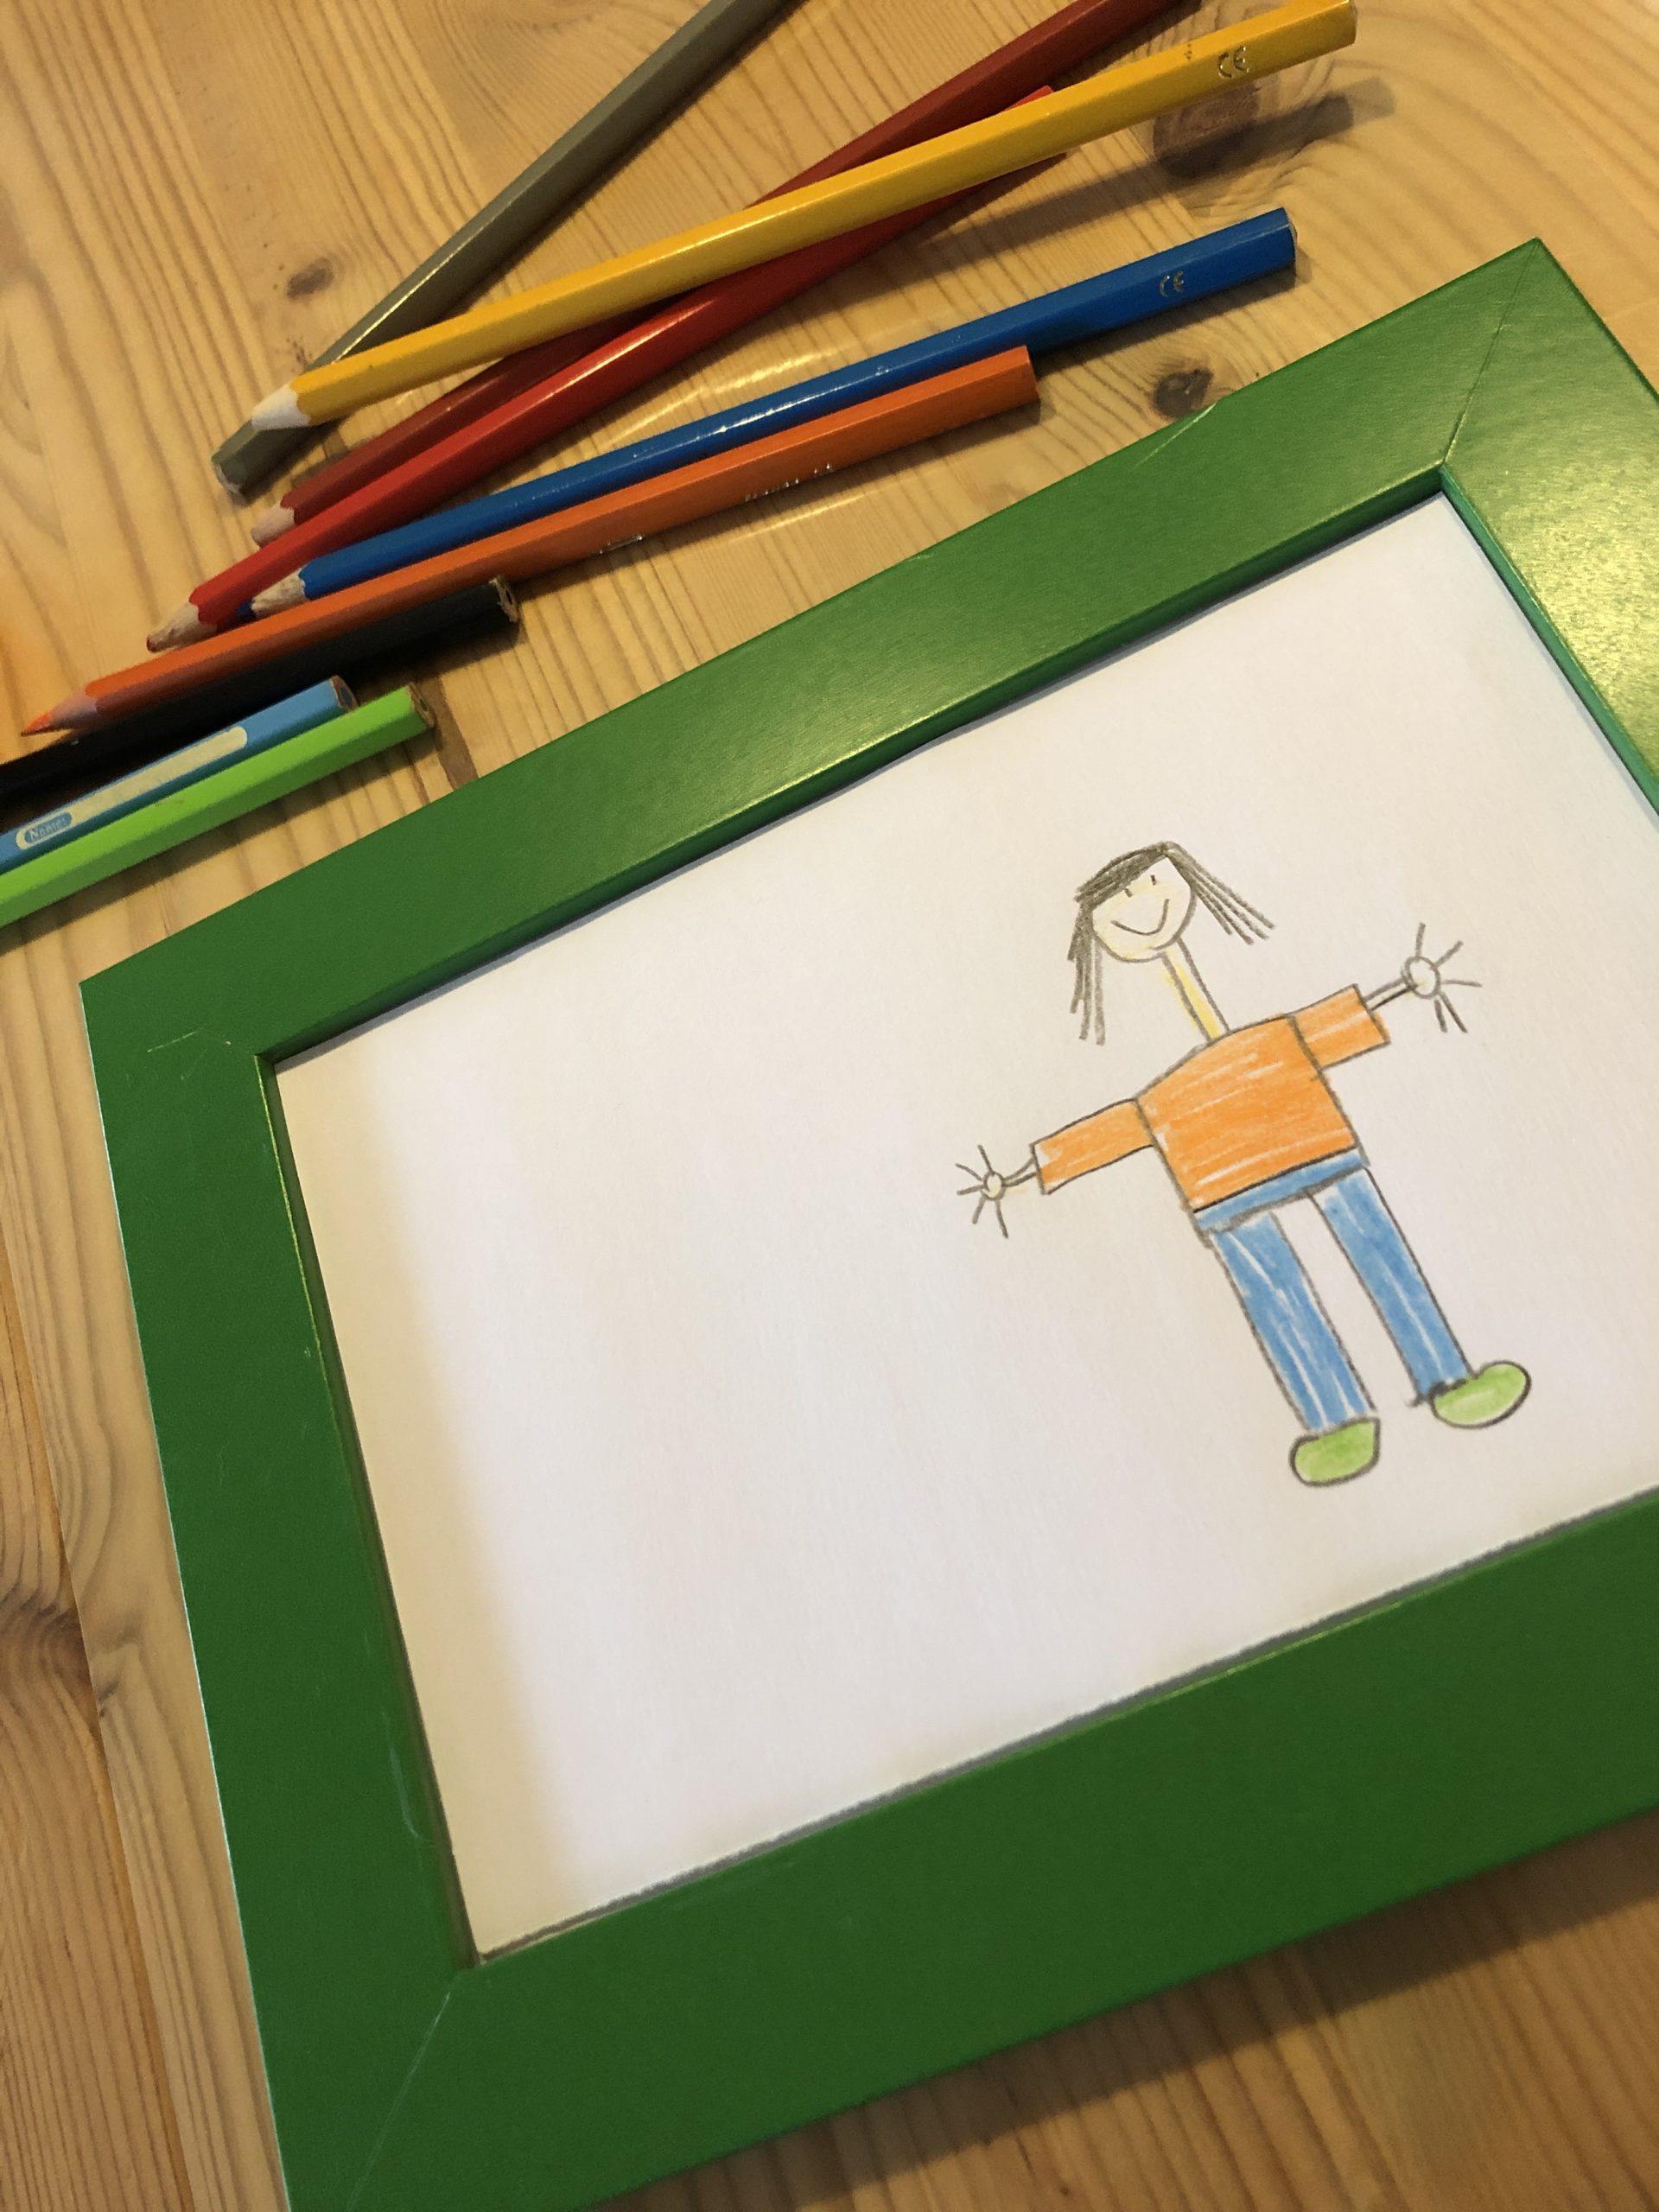 Bild zum Schritt 6 für das Bastel- und DIY-Abenteuer für Kinder: 'Rahmt das gemalte Bild.'